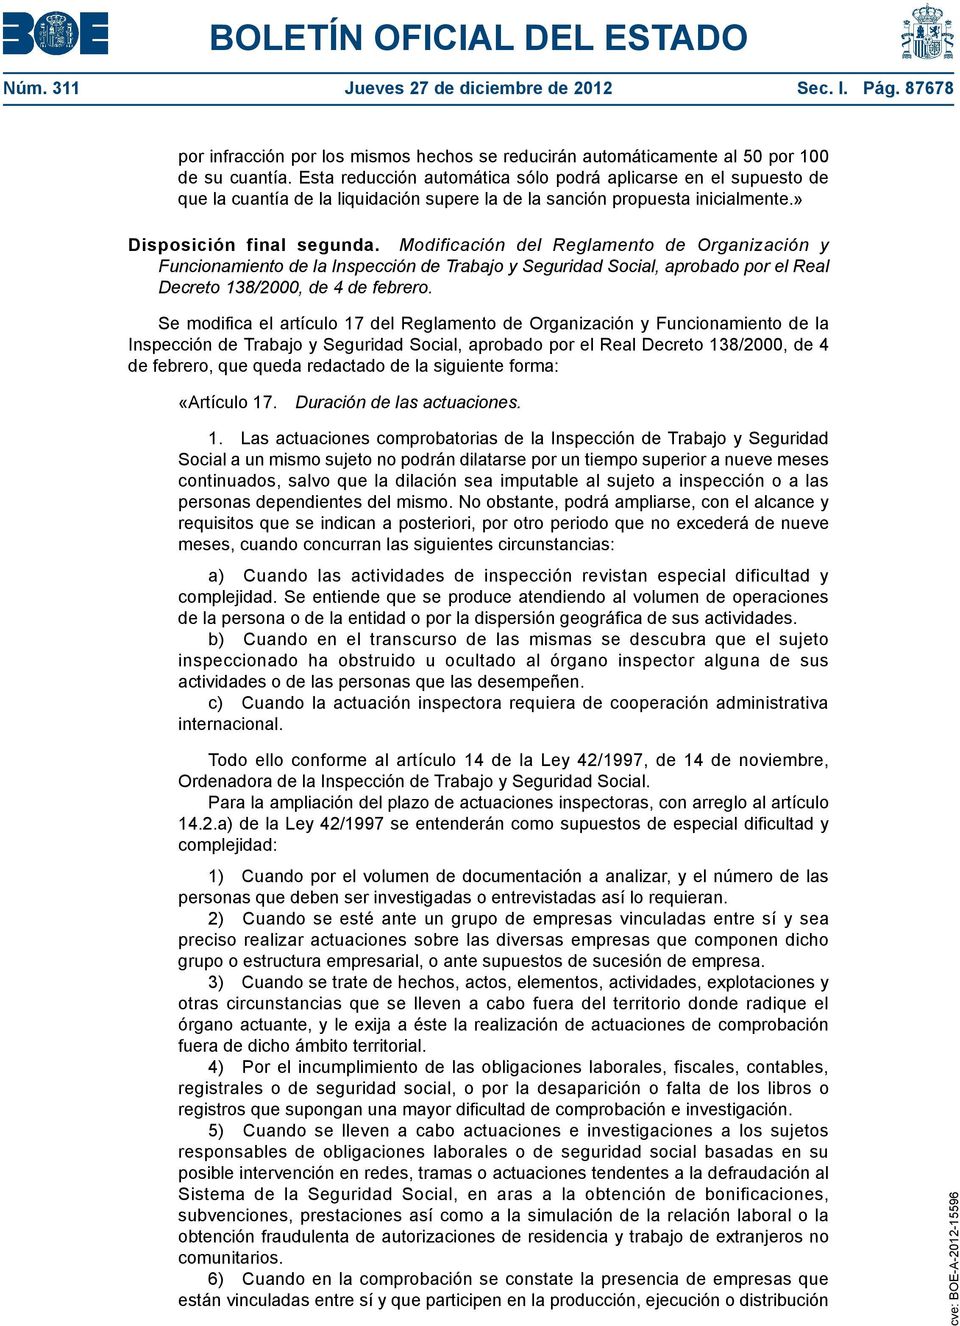 Modificación del Reglamento de Organización y Funcionamiento de la Inspección de Trabajo y Seguridad Social, aprobado por el Real Decreto 138/2000, de 4 de febrero.